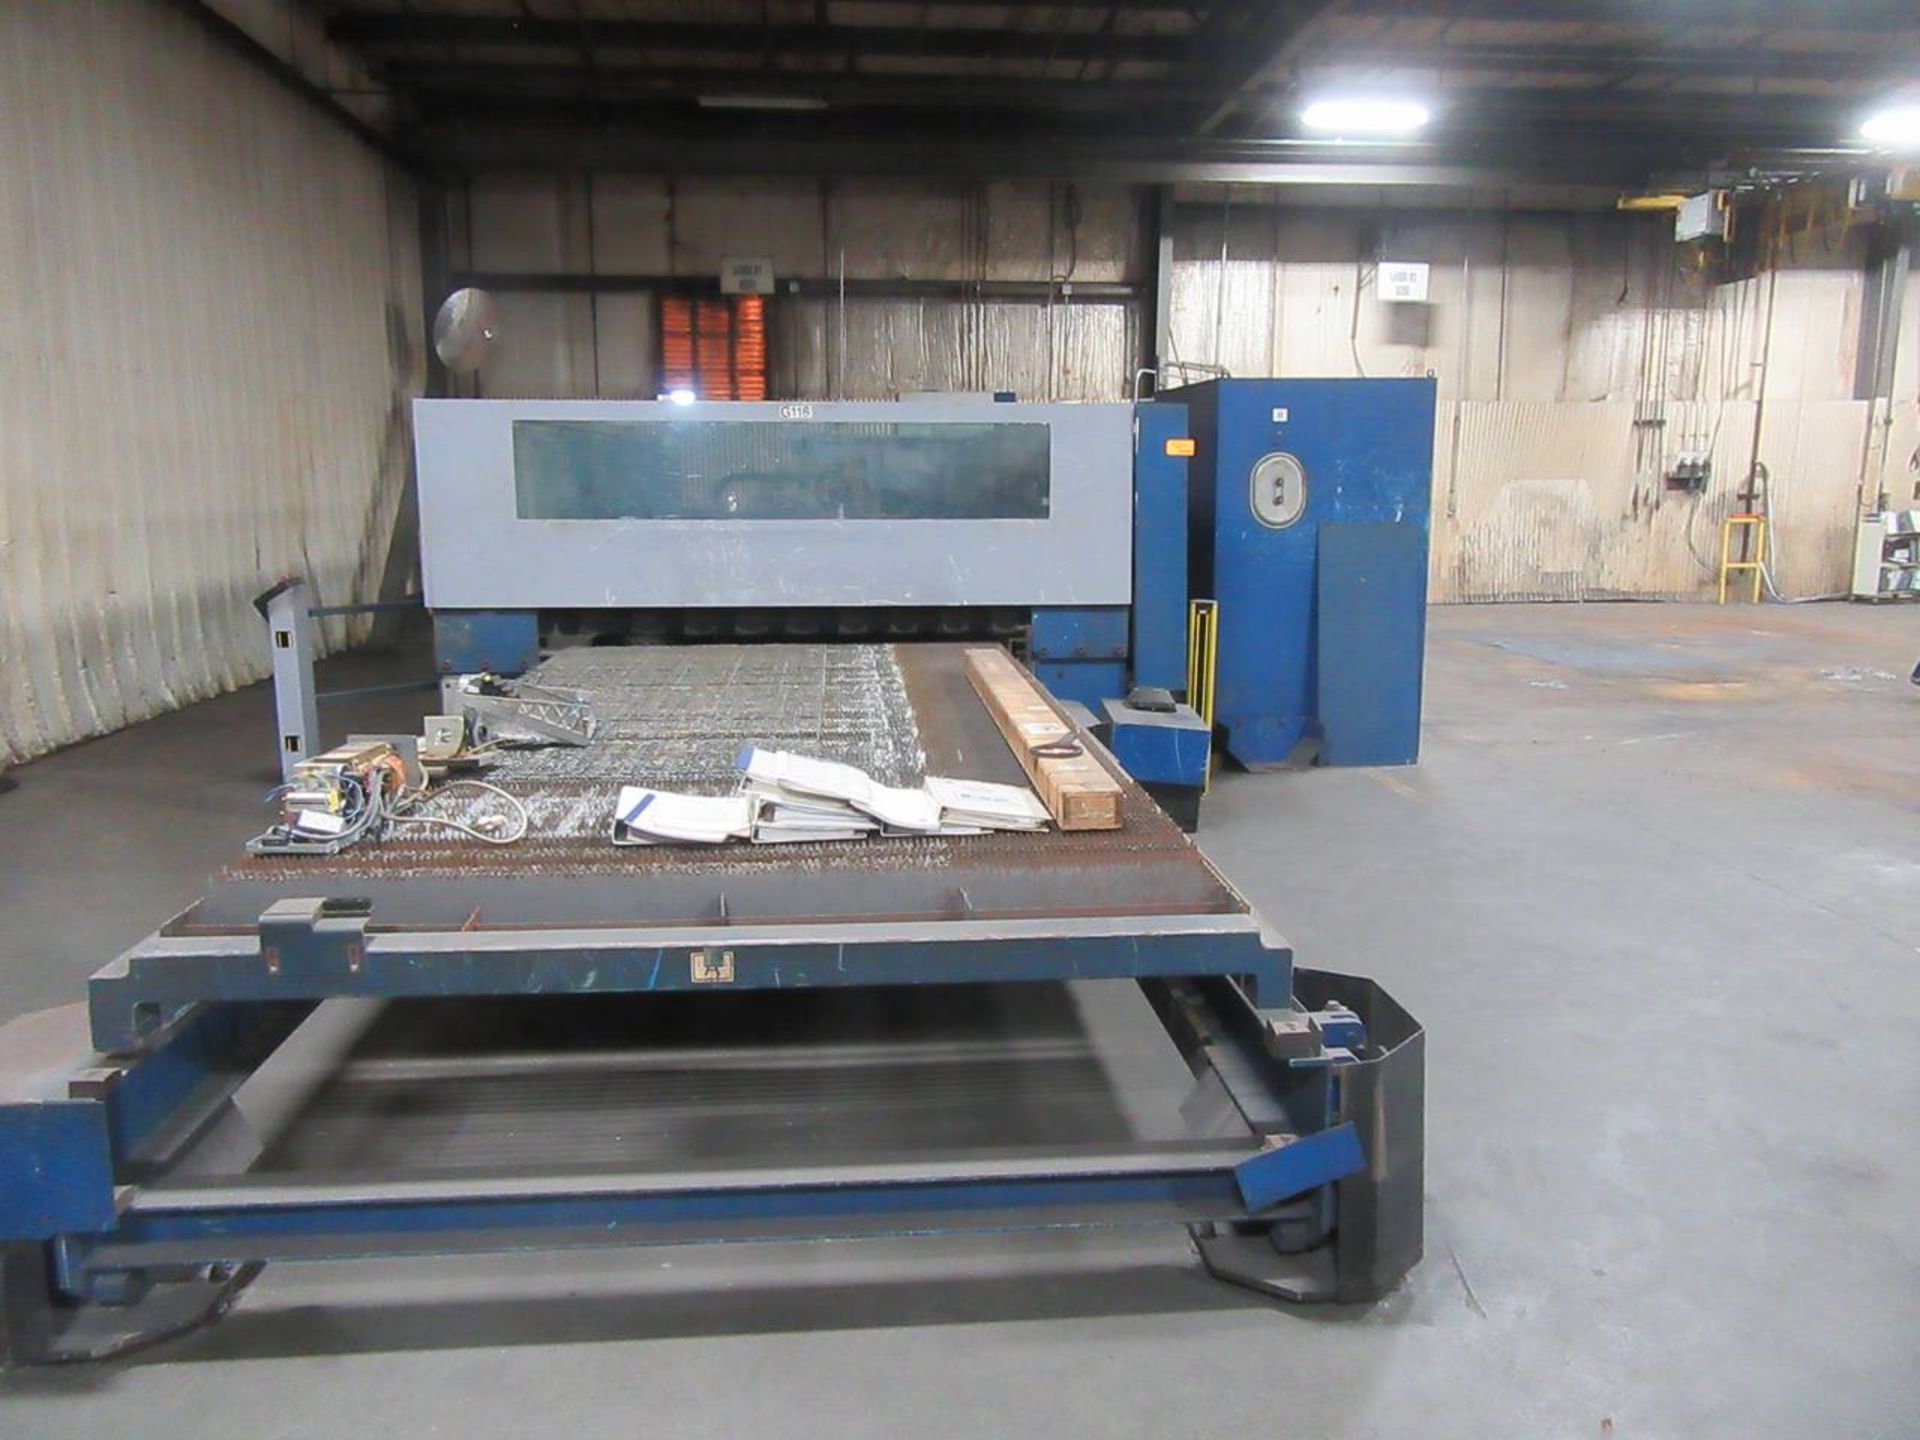 2004 Trumpf Trumatic L-4050 CNC Laser Cutting Machine - Image 2 of 8